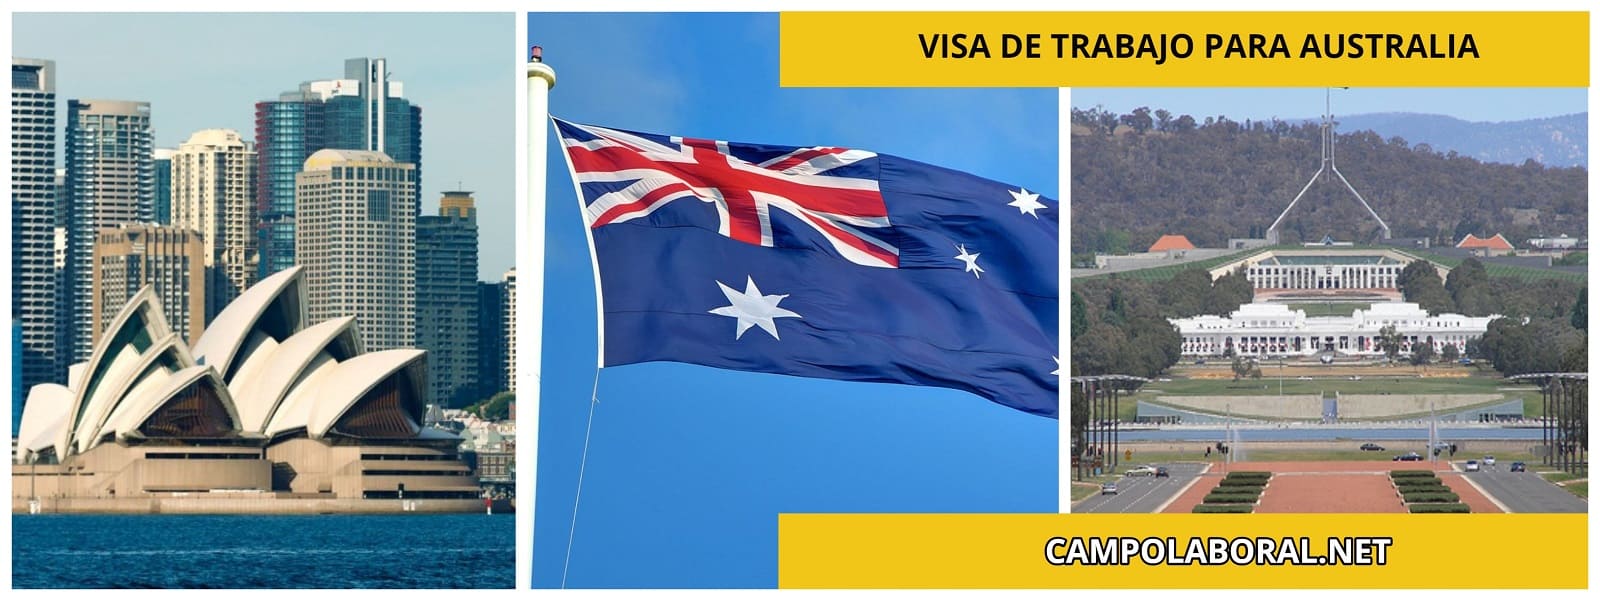 Visa de trabajo para Australia 2022: Cómo conseguir una, requisitos y más